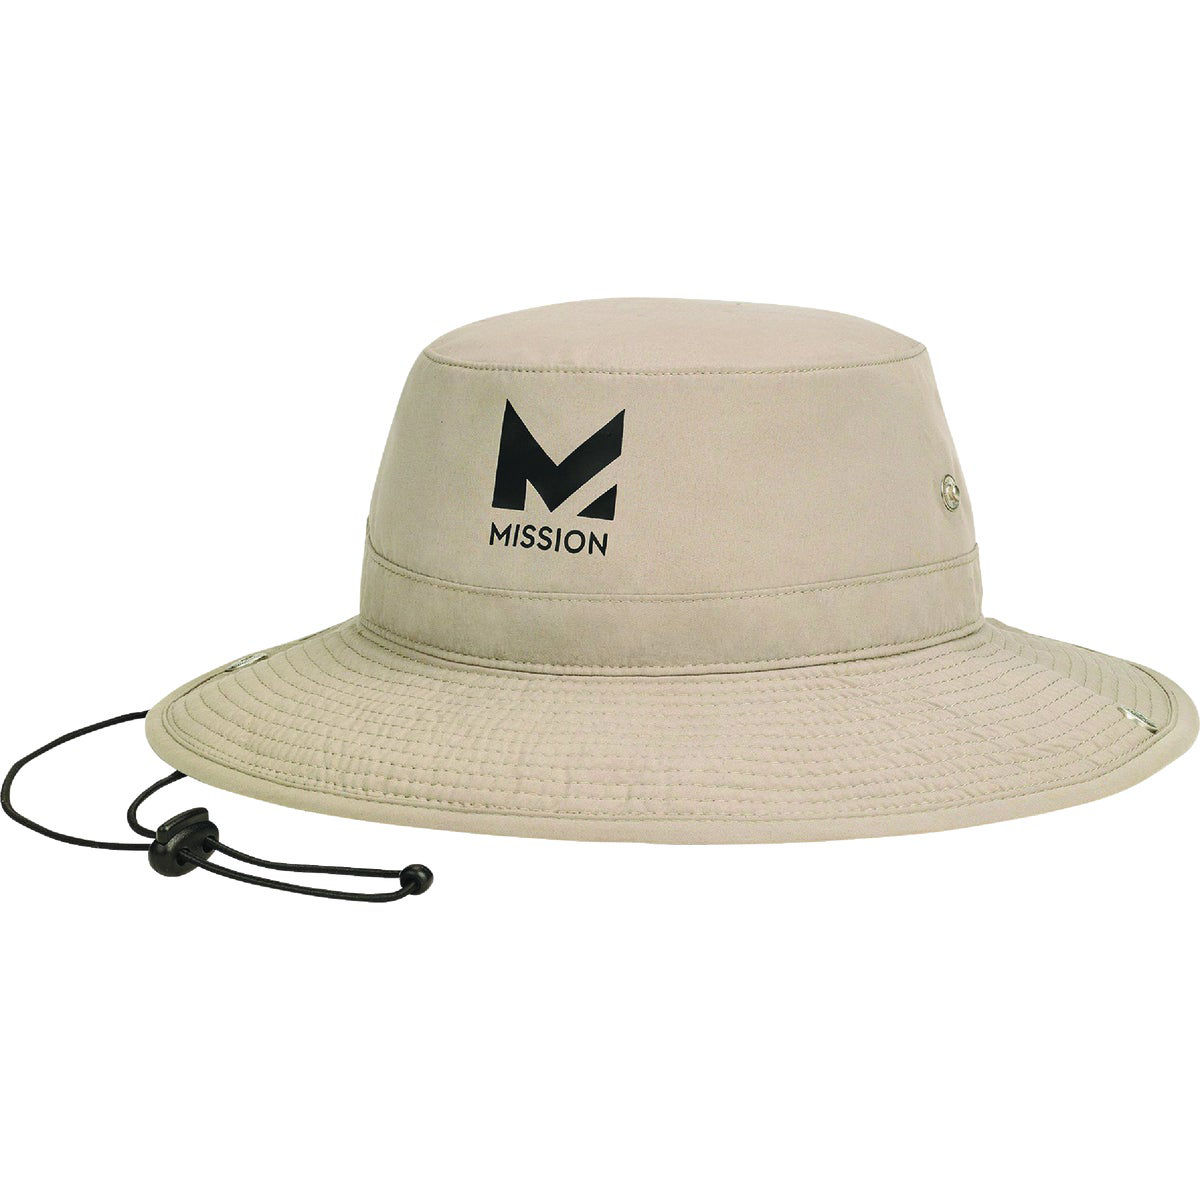 Mission MISSION Sun Defender Cooling Neck Guard, Wide Brim Hats